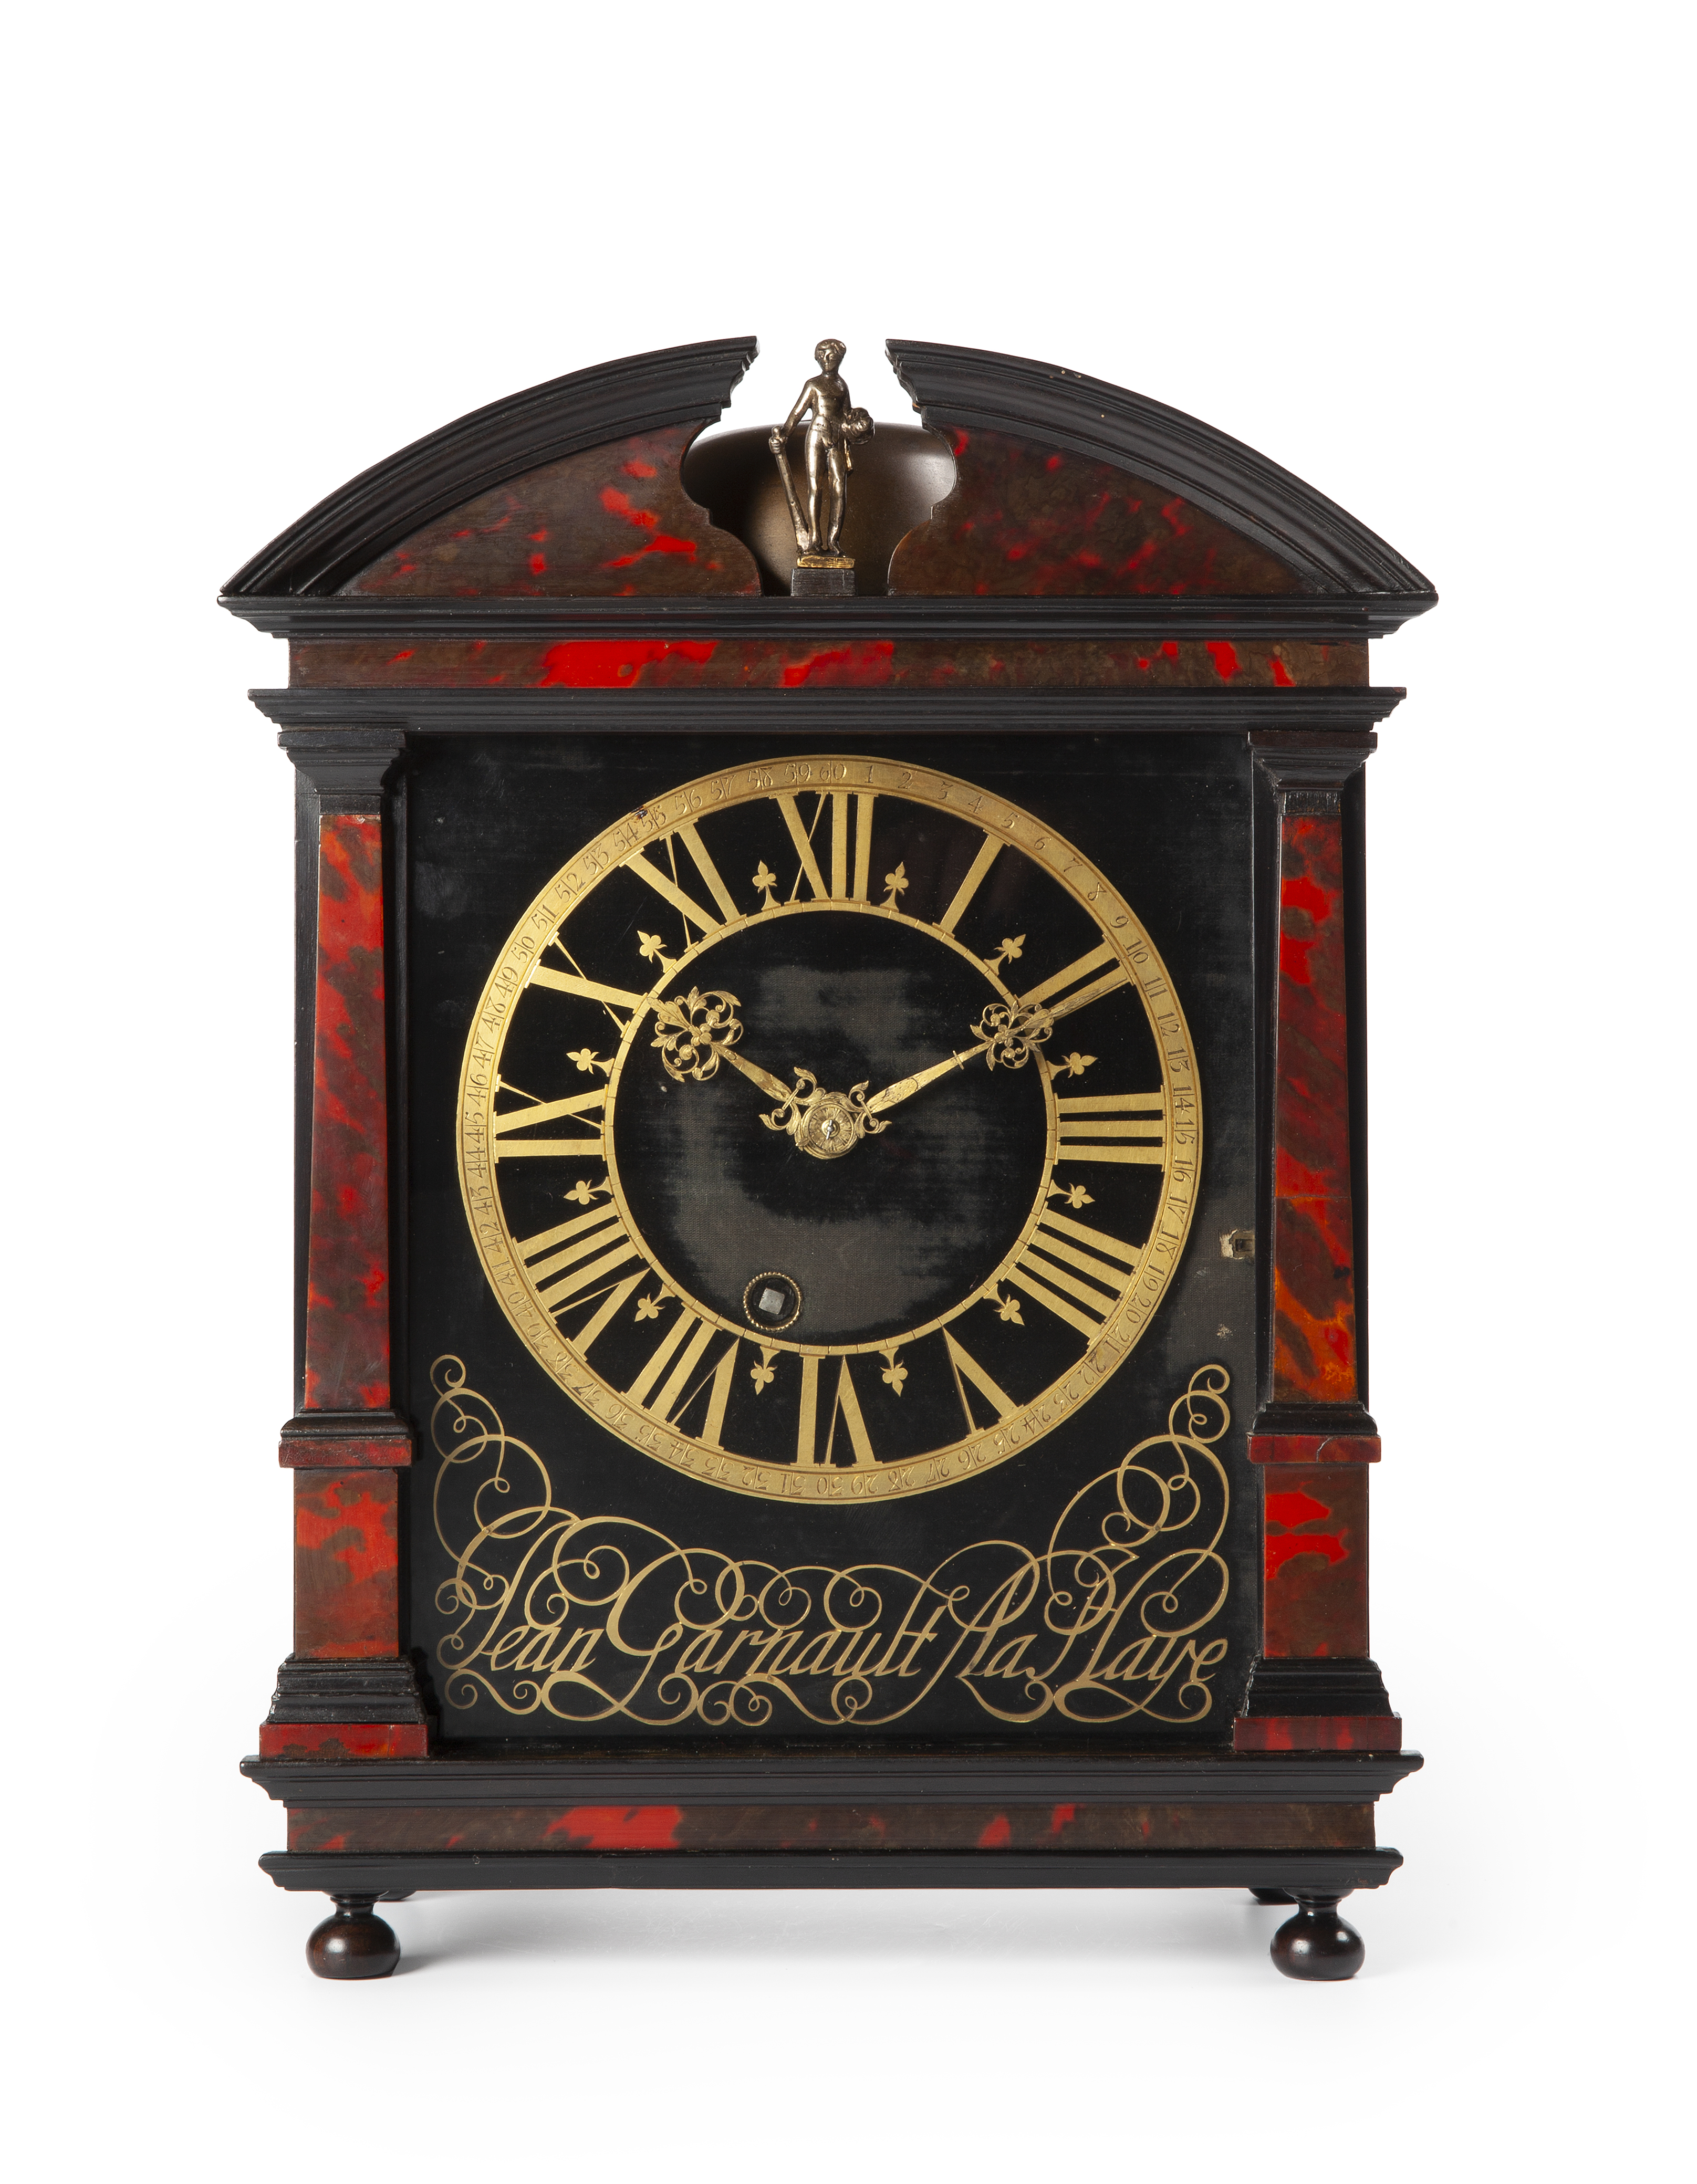 dennenboom Verbergen soort Collectie antieke klokken collection antique clock clocks